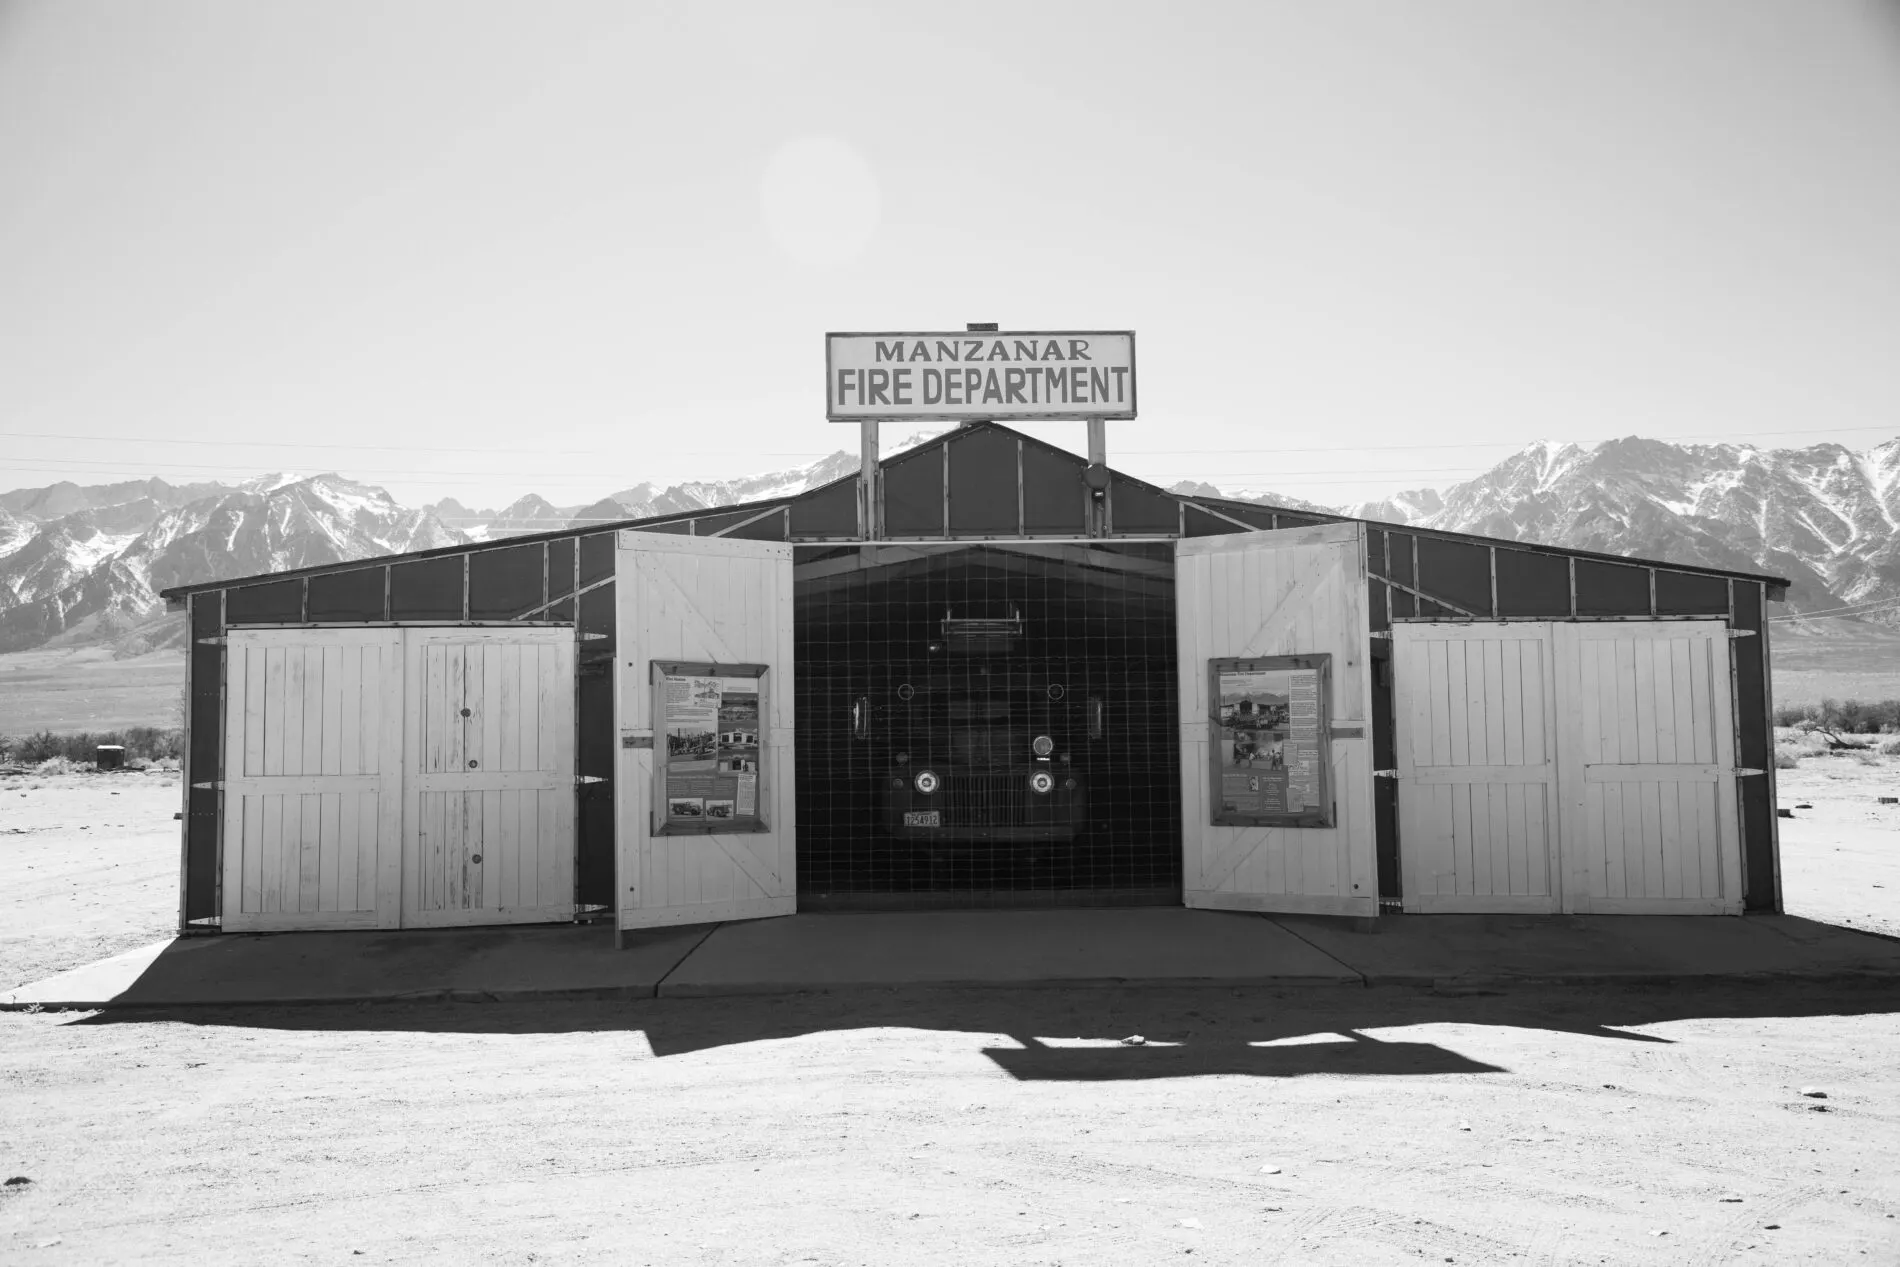 The Manzanar Fire Department.